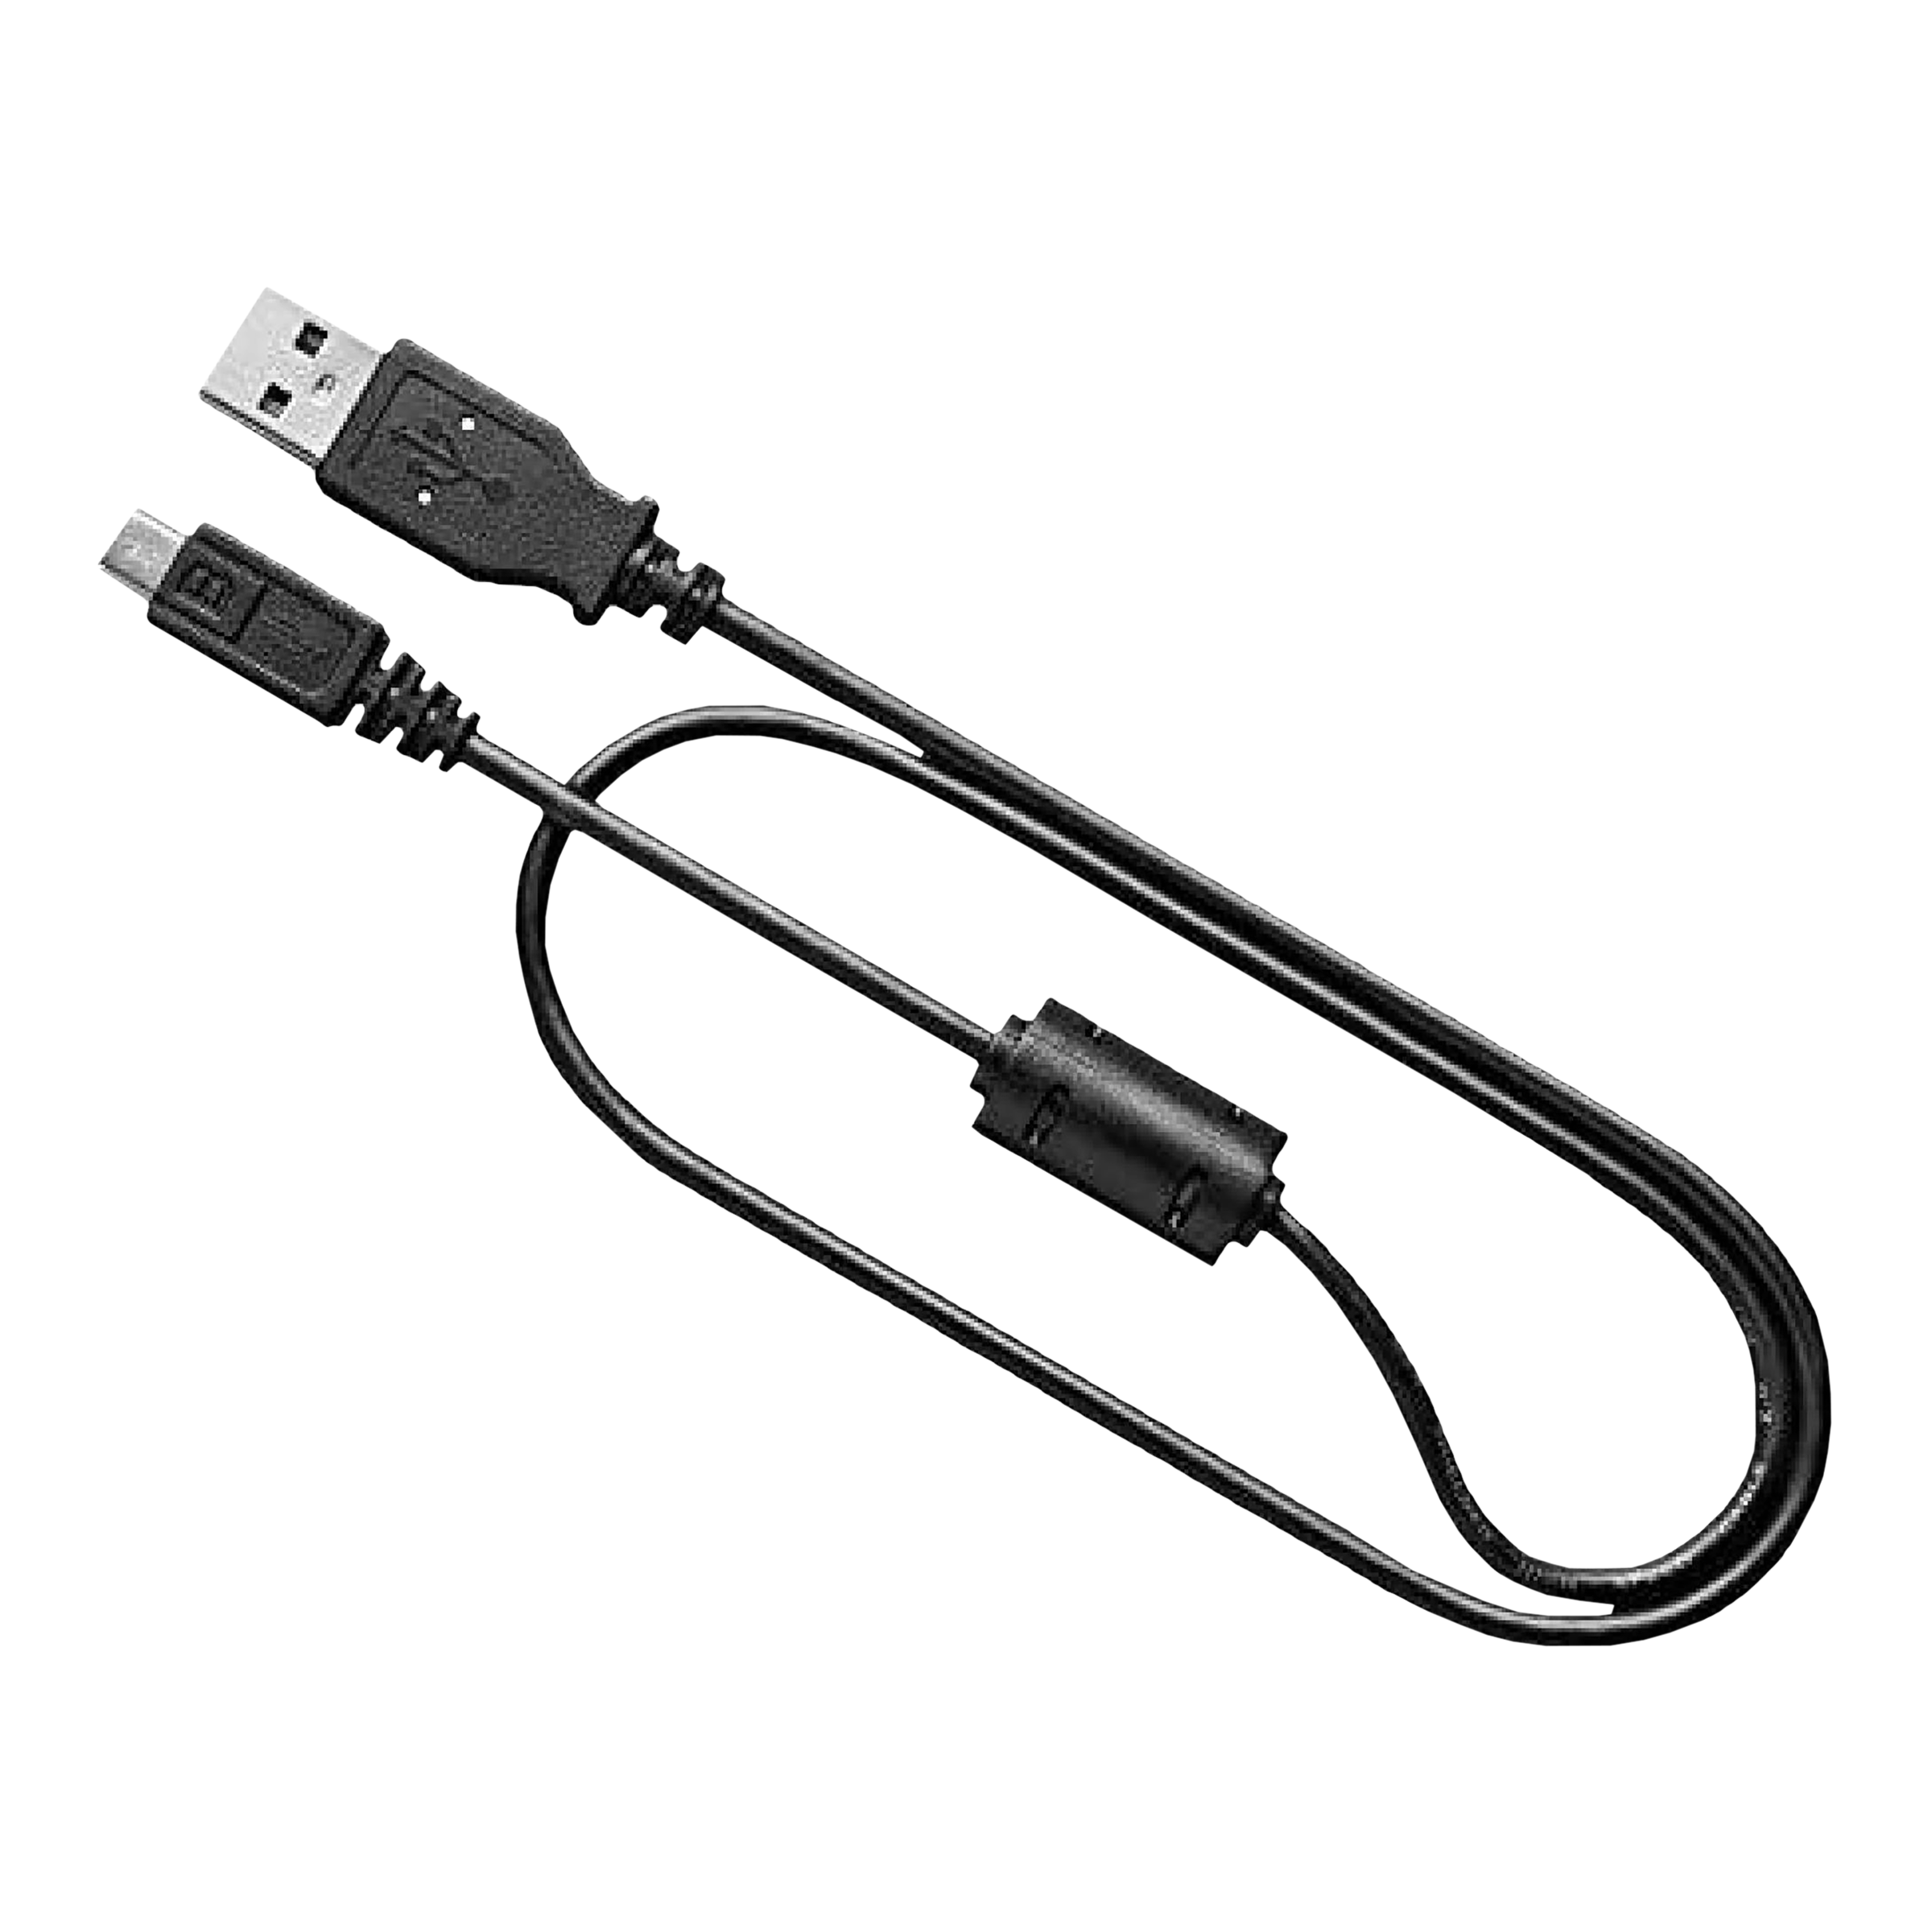 HMI USB cable (USB mini 5 pin cable) - COMFILE Technology